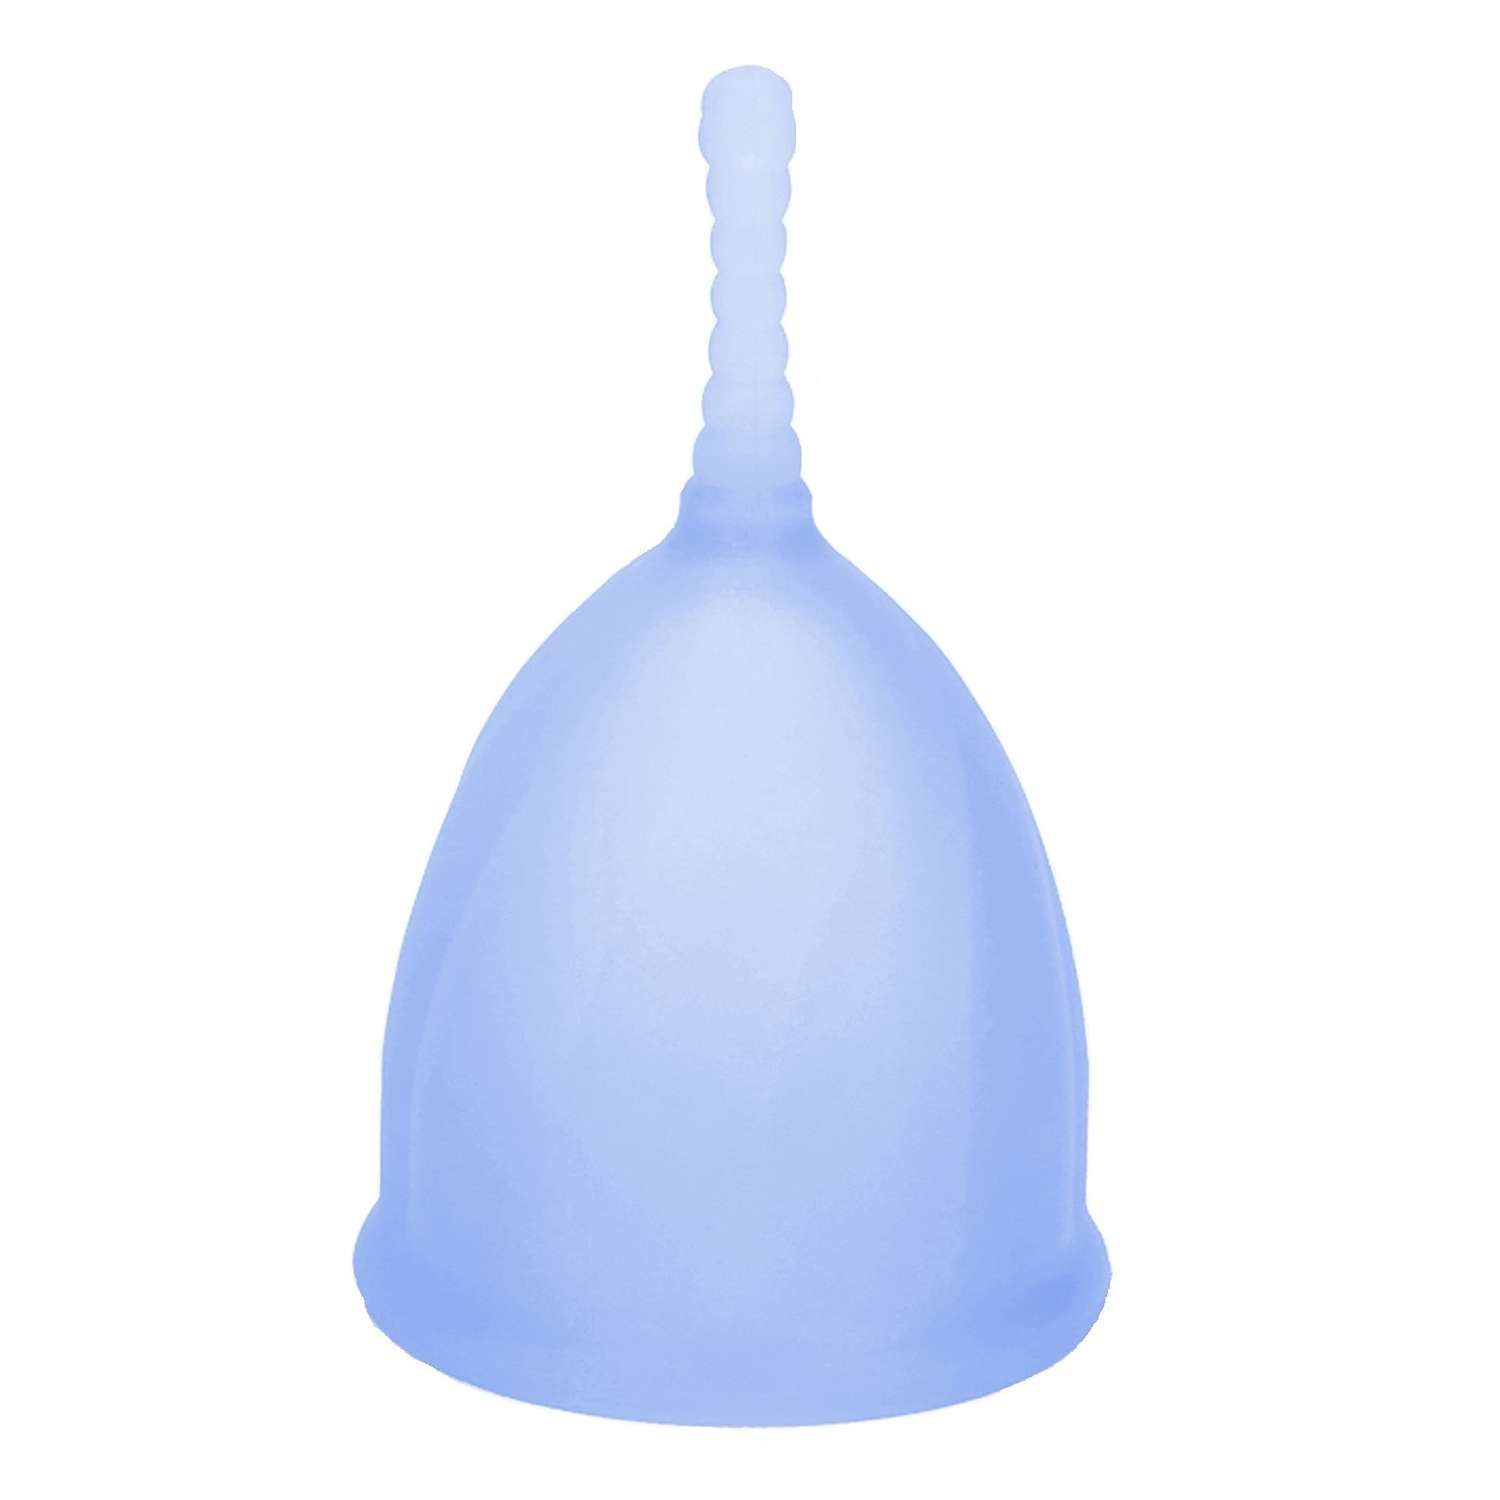 Менструальная чаша NDCG Comfort Cup размер L голубой - фото 2